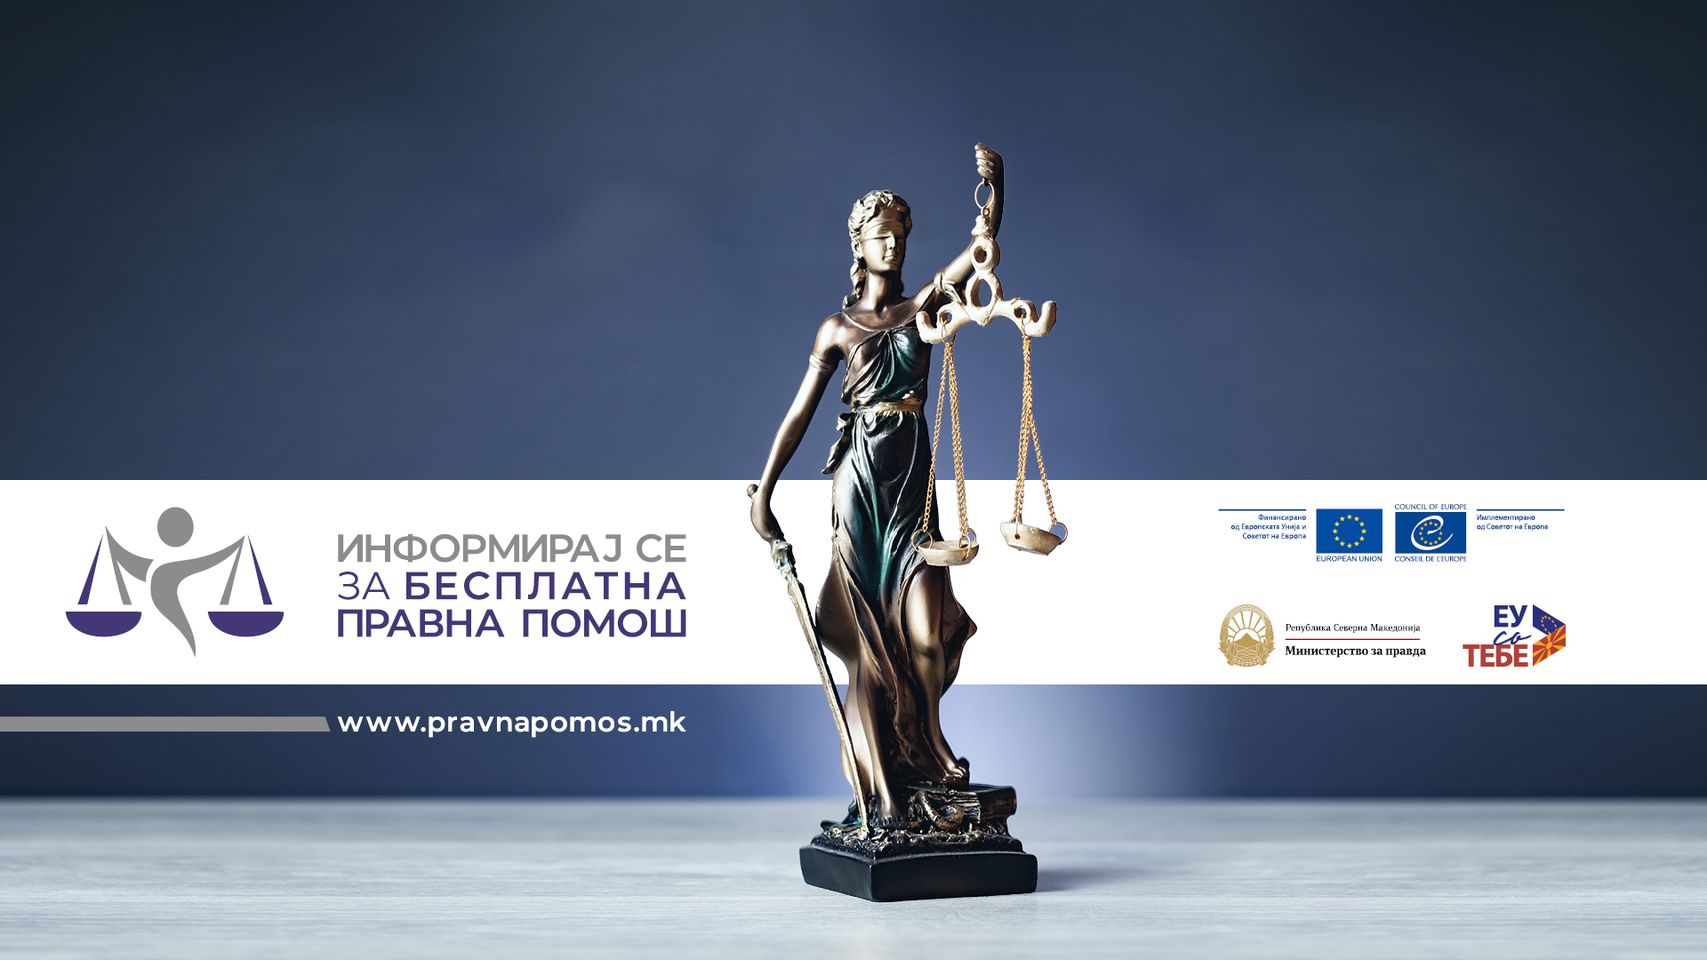 Граѓаните на Северна Македонија се информираа за услугите за бесплатна правна помош и за нивната проширена употреба